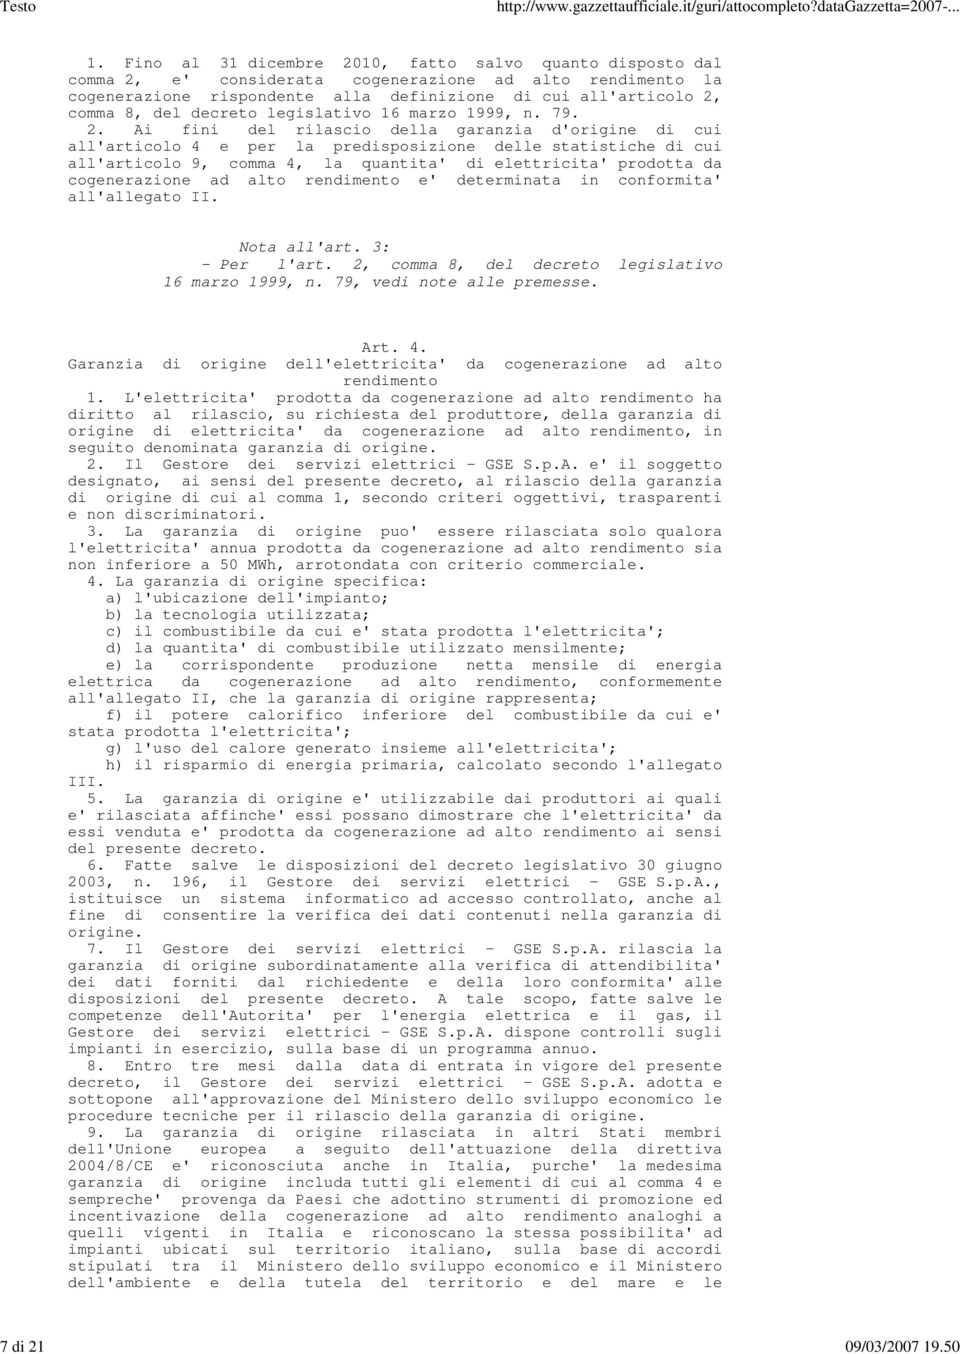 decreto legislativo 16 marzo 1999, n. 79. 2.